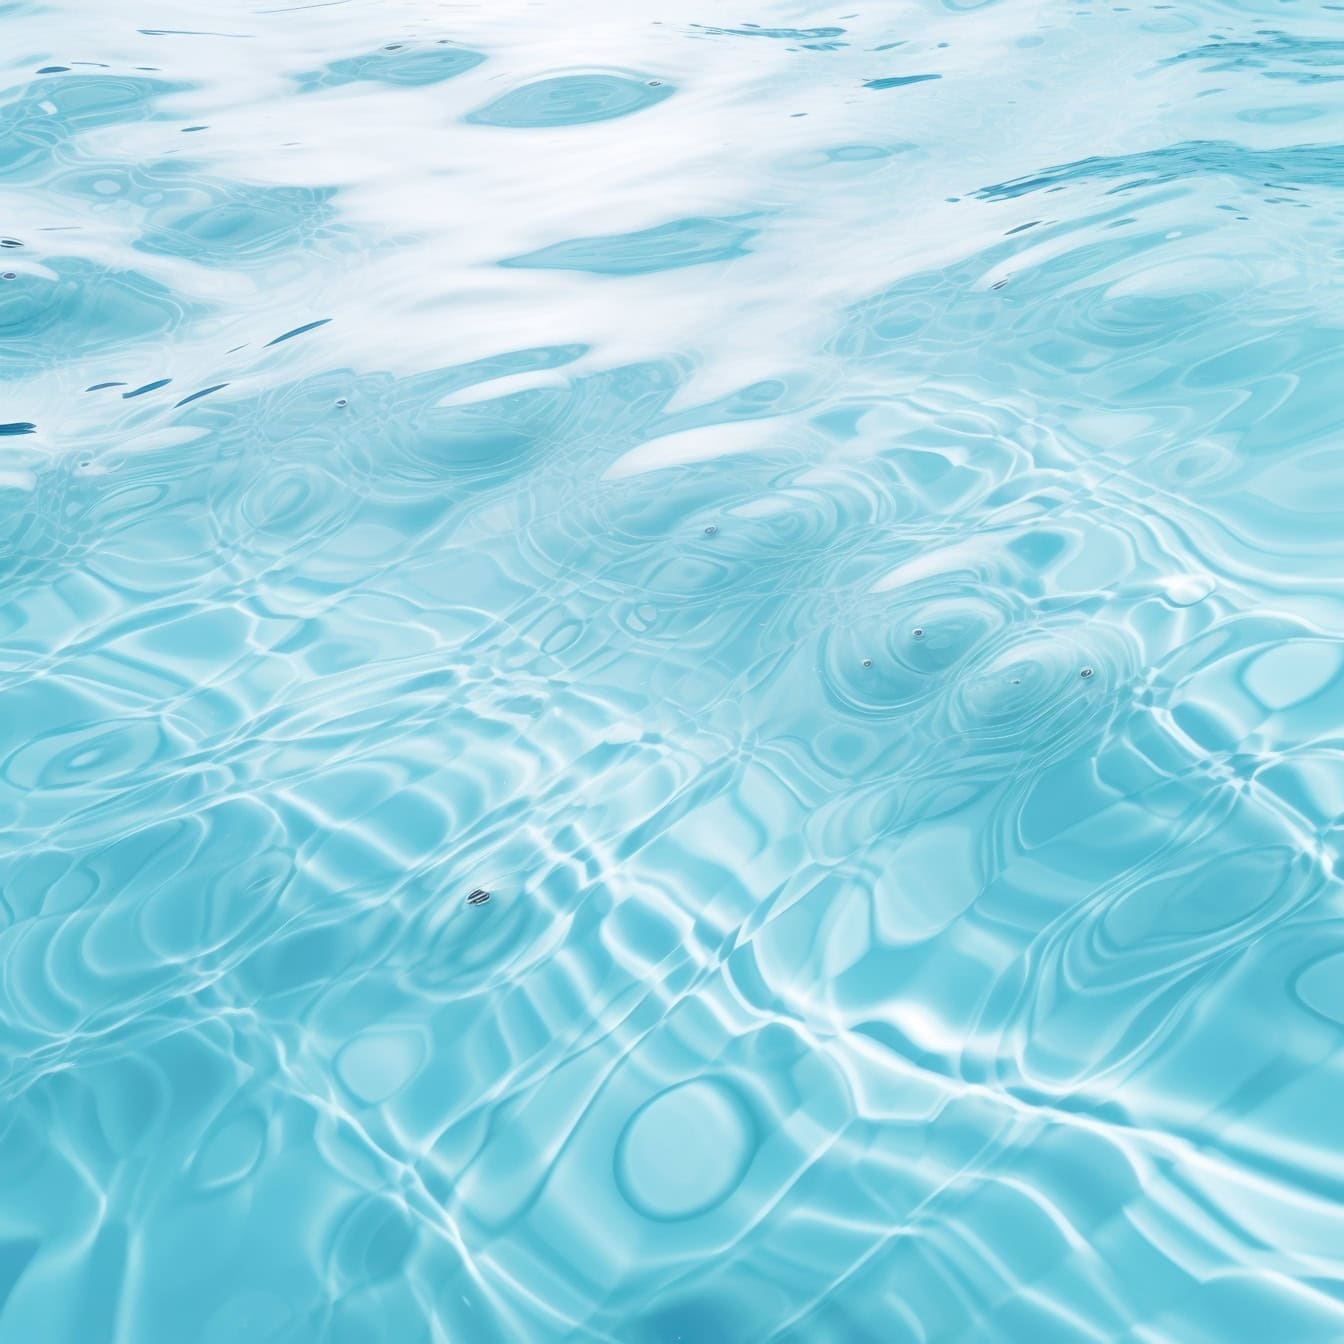 Ondulaciones en el agua azul turquesa transparente